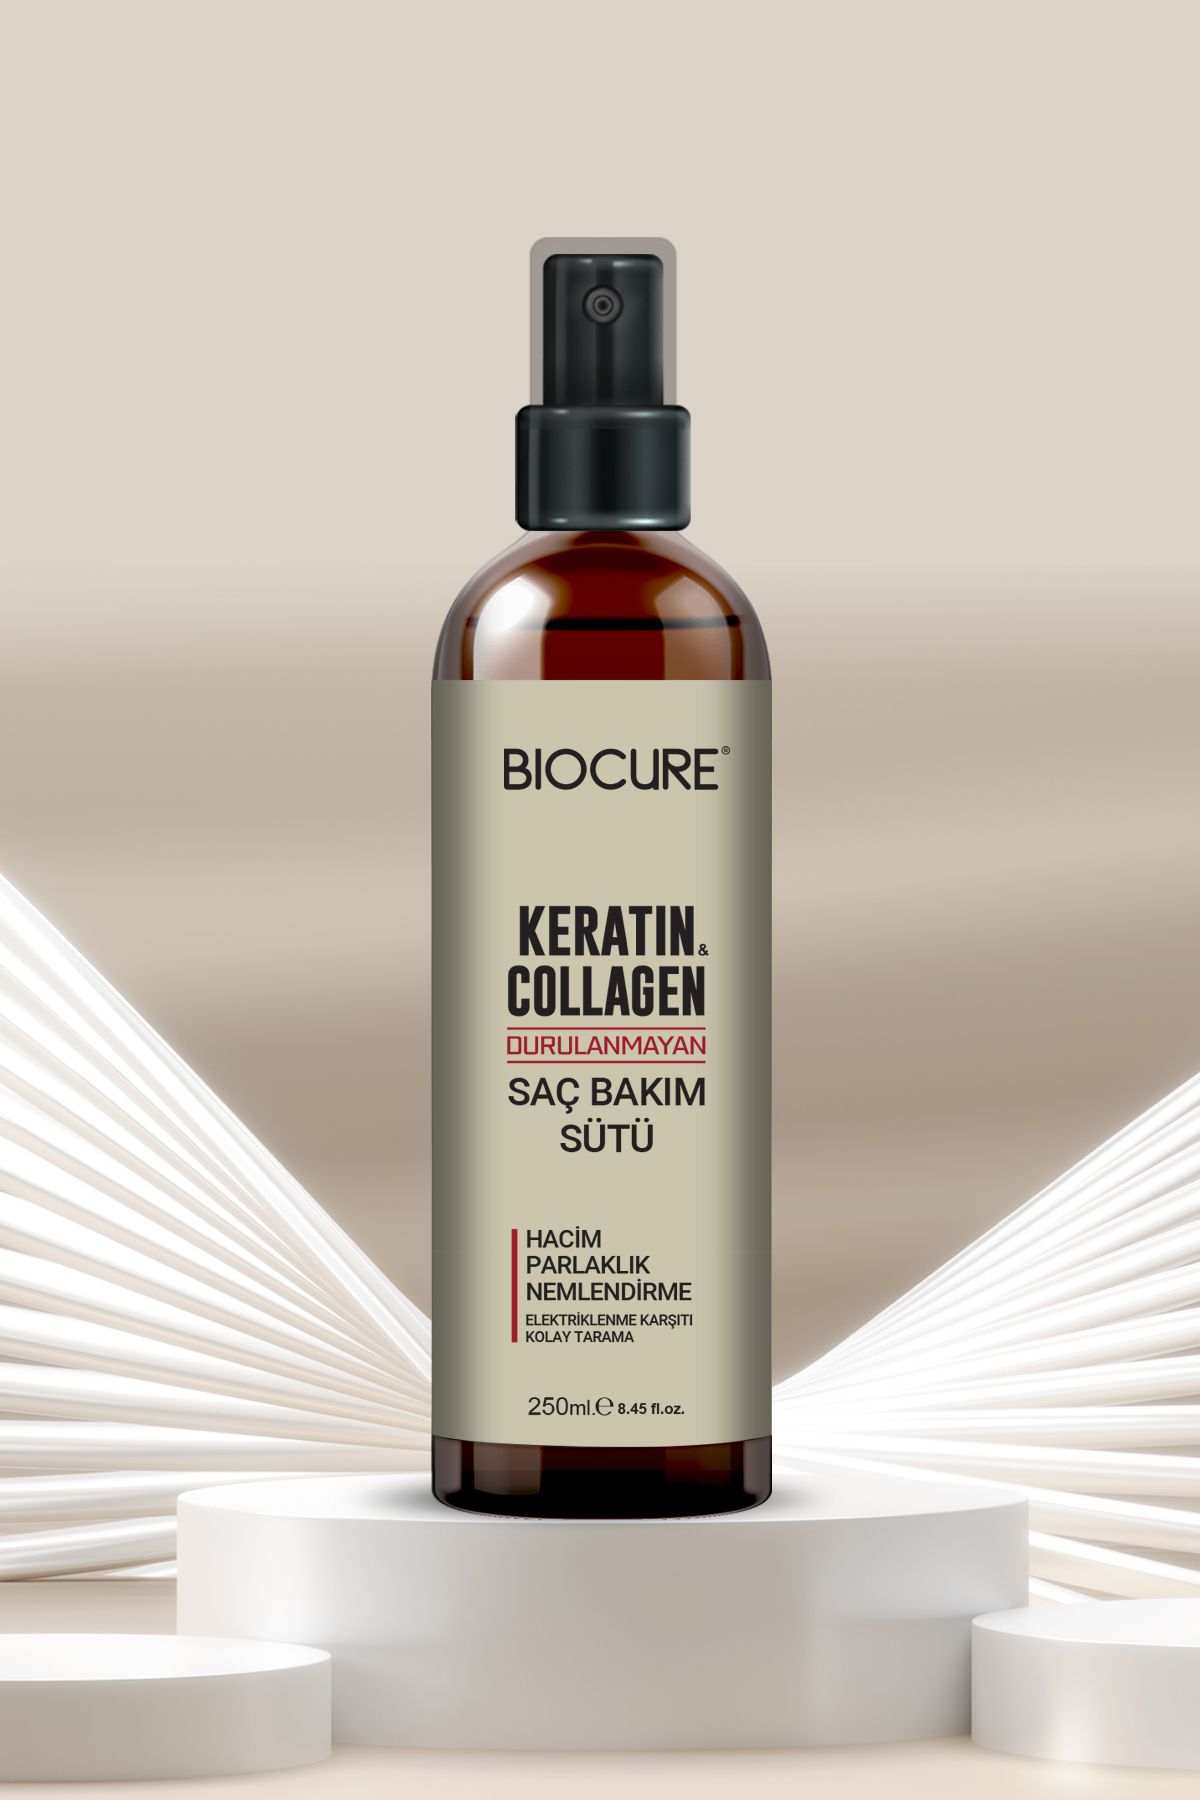 Biocure Keratin Collagen Durulanmayan Saç Bakım Sütü Hacim, parlaklık nemlendirme Kolay Tarama 250ml.